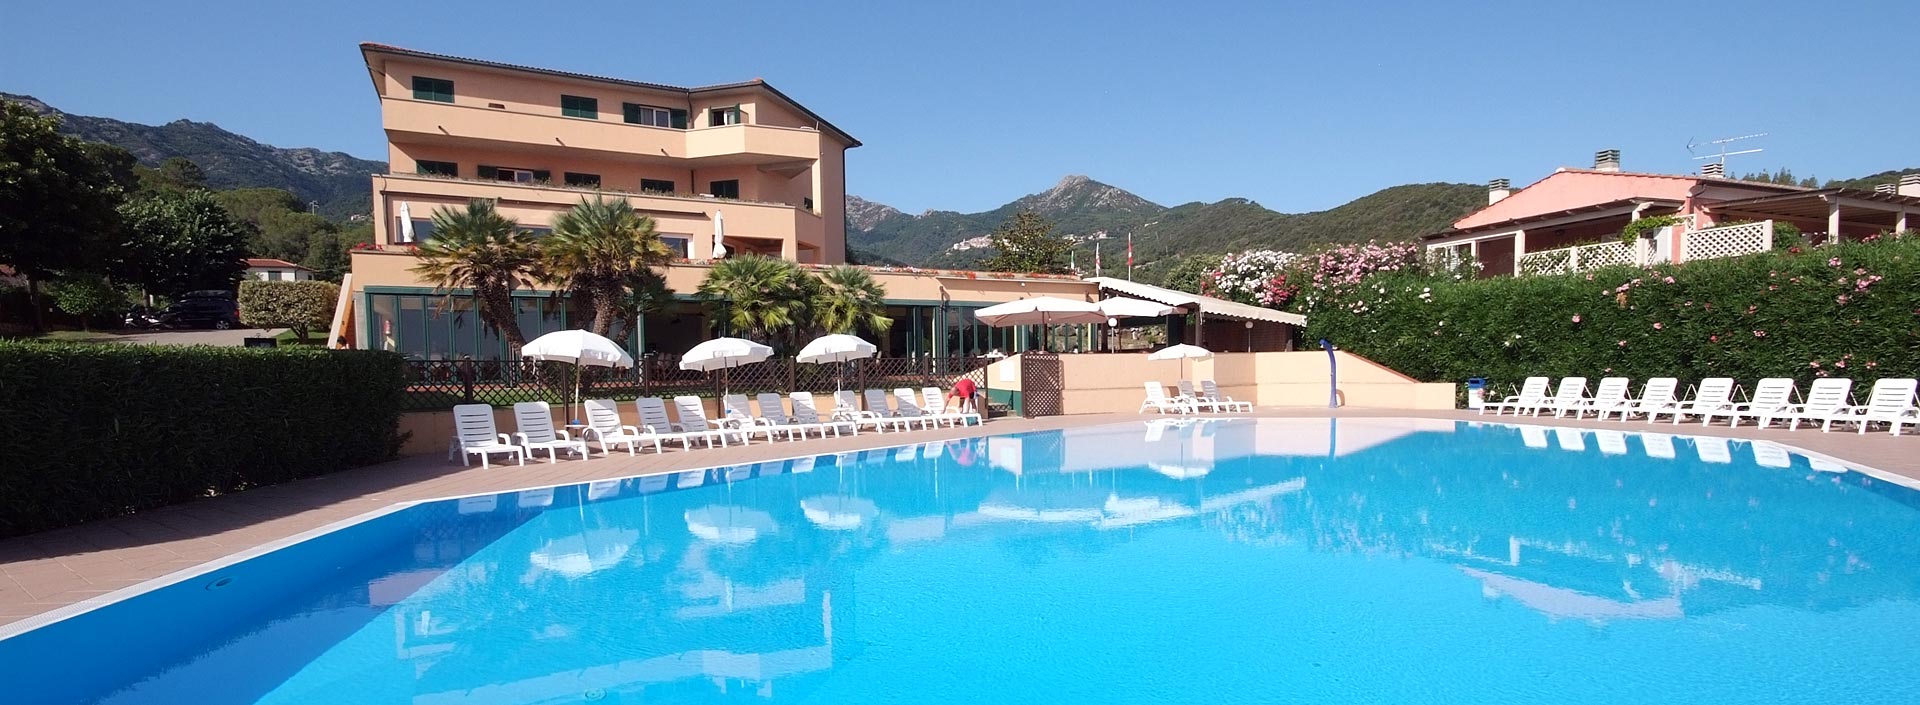 Hotel & Residence all'Isola d'Elba